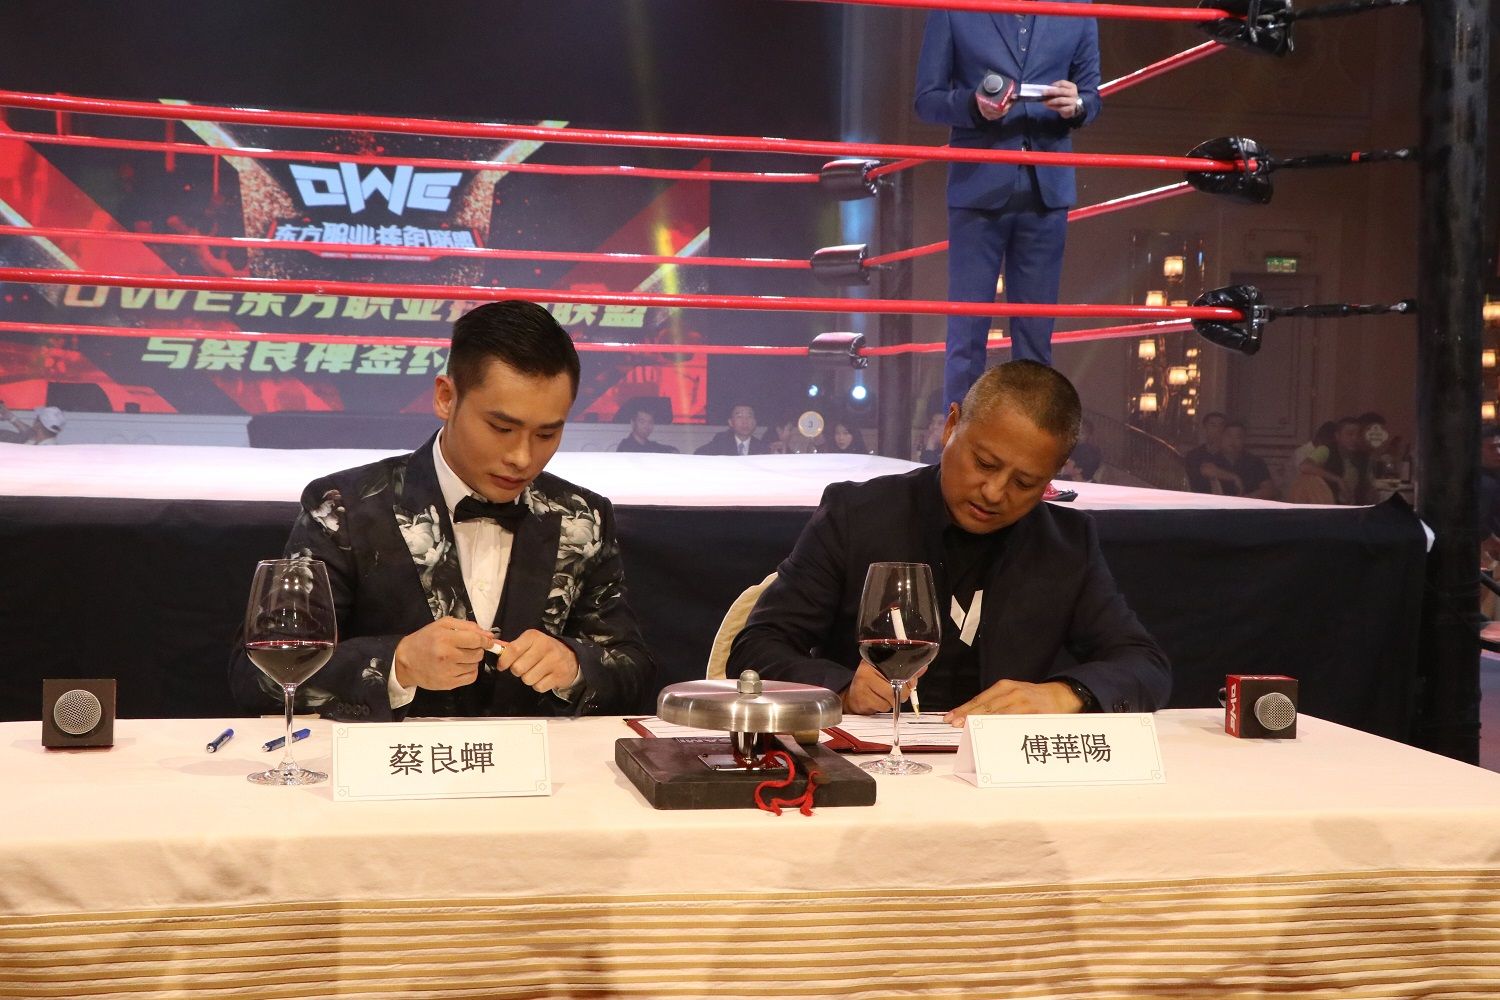 蔡良蟬宣布轉戰職業摔角